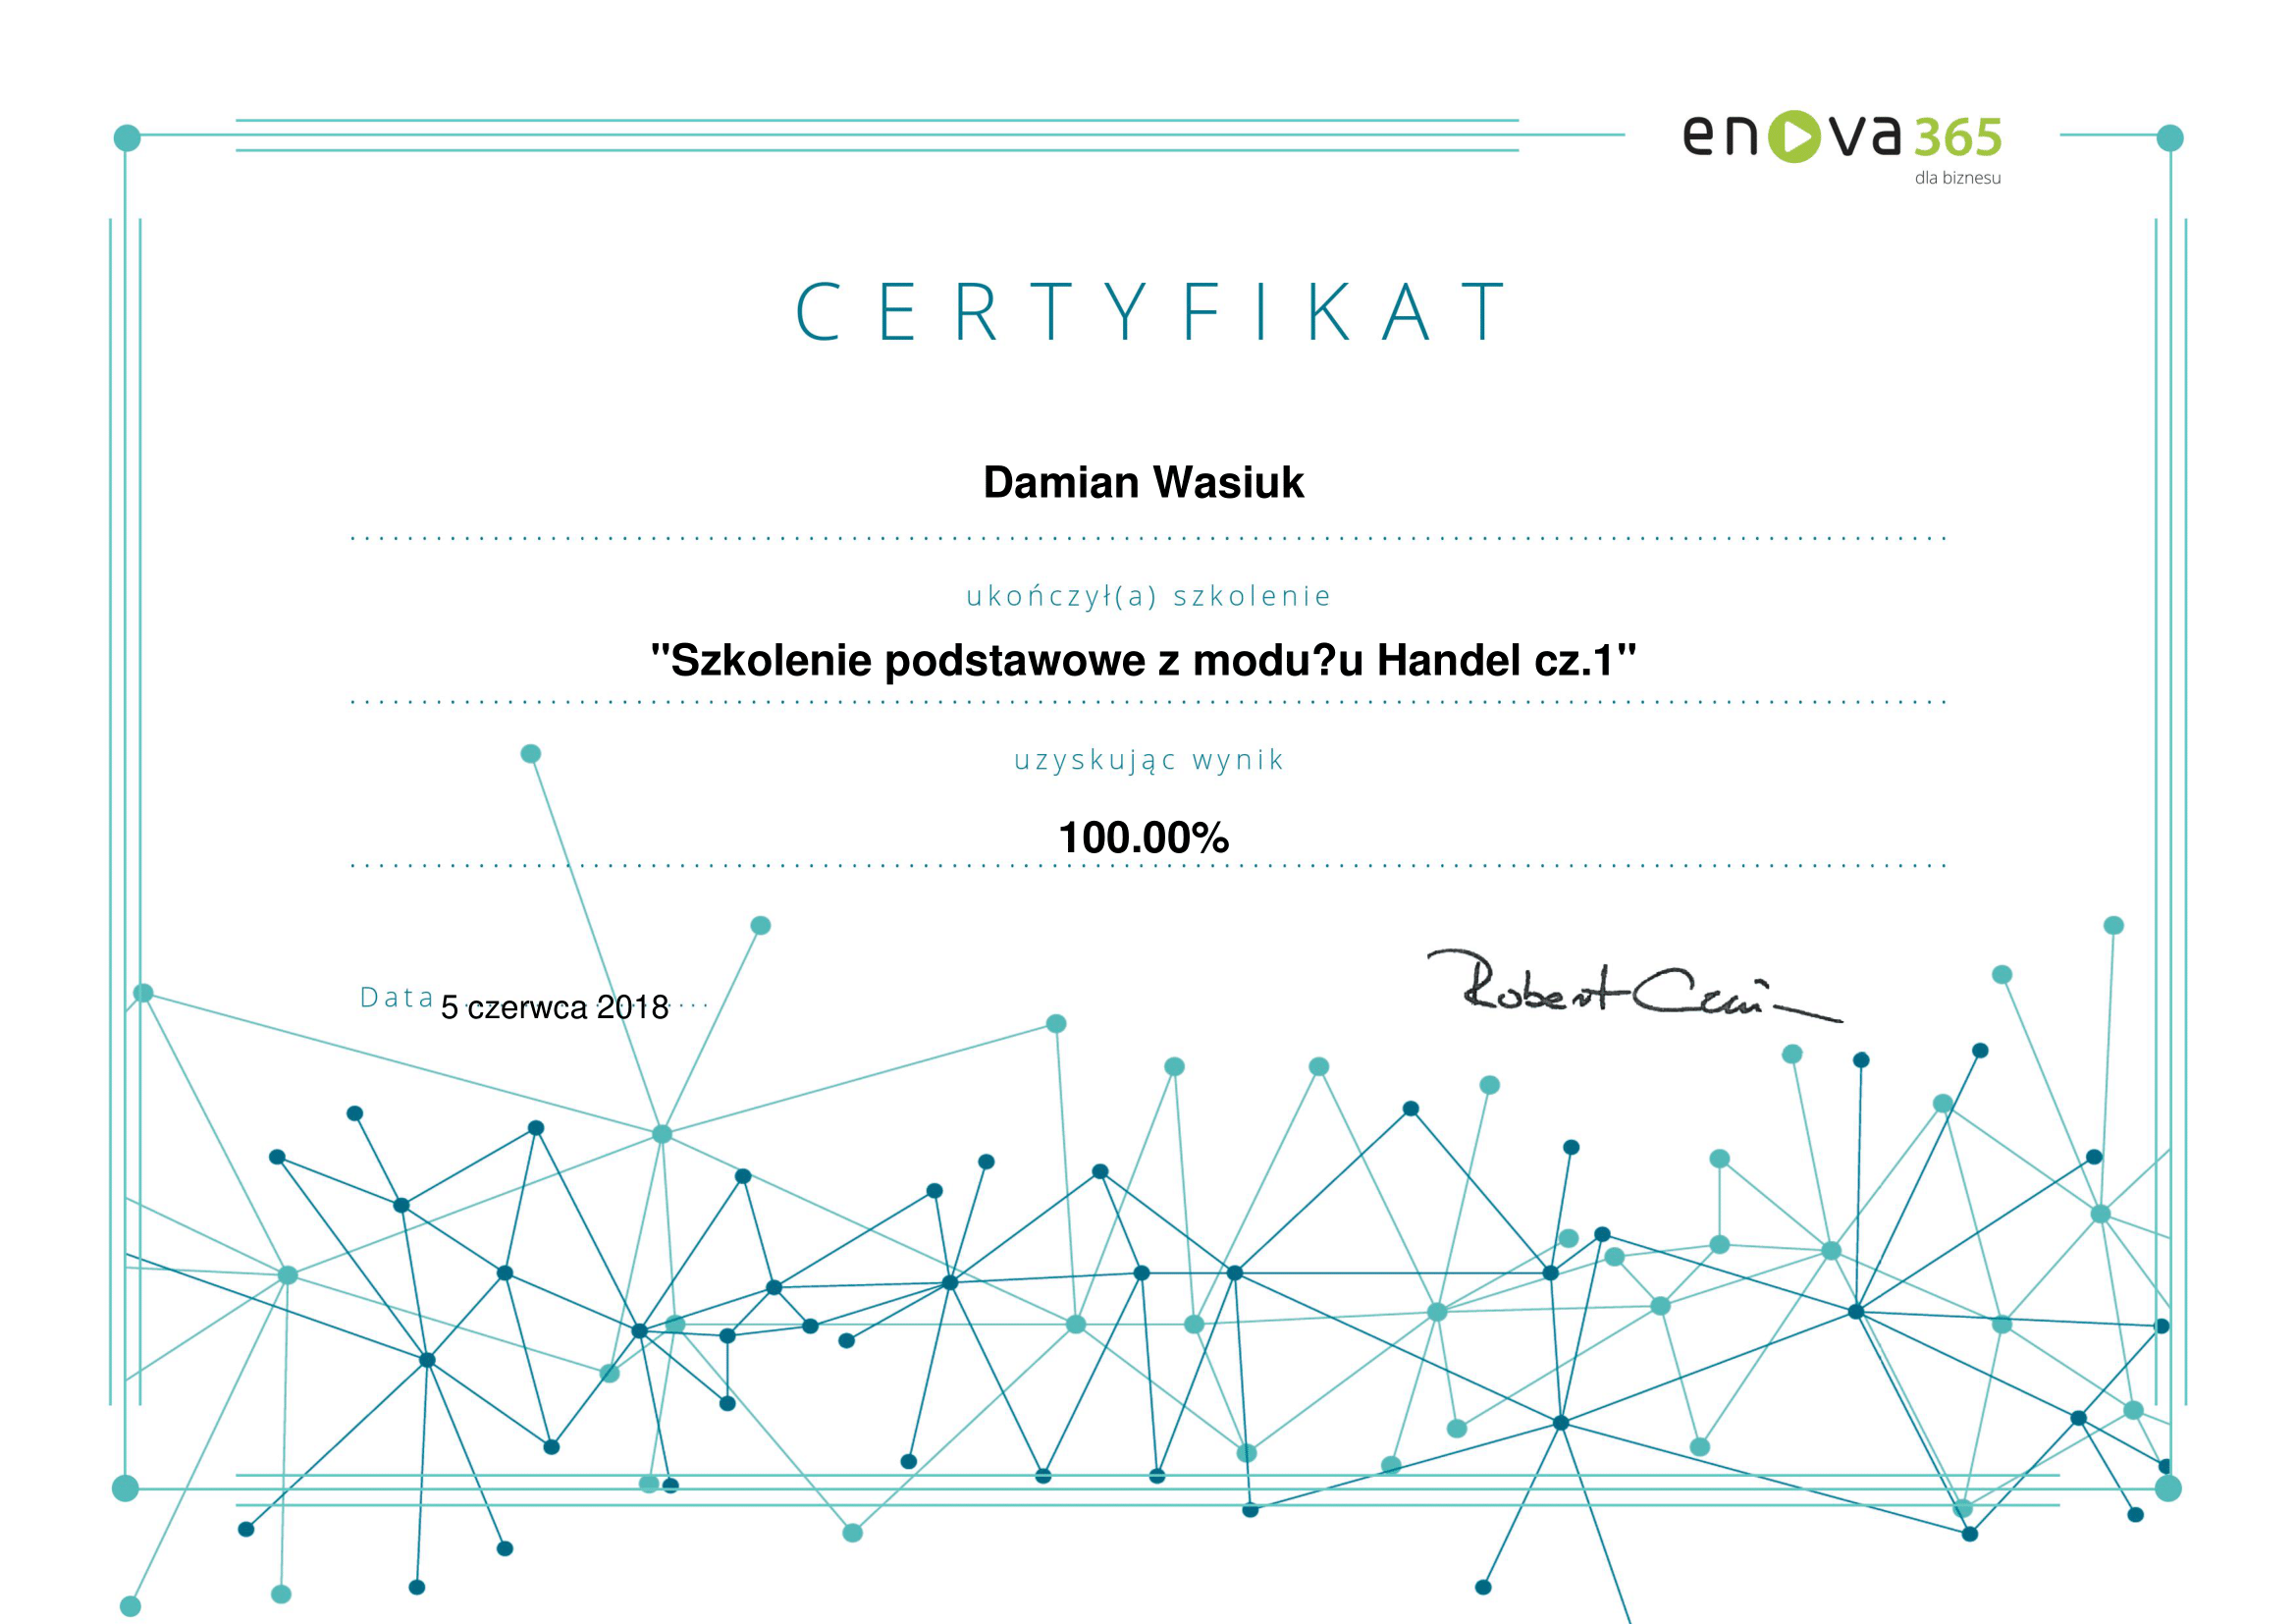 enova365_Certyfikat_podstawowy_Handel_cz1